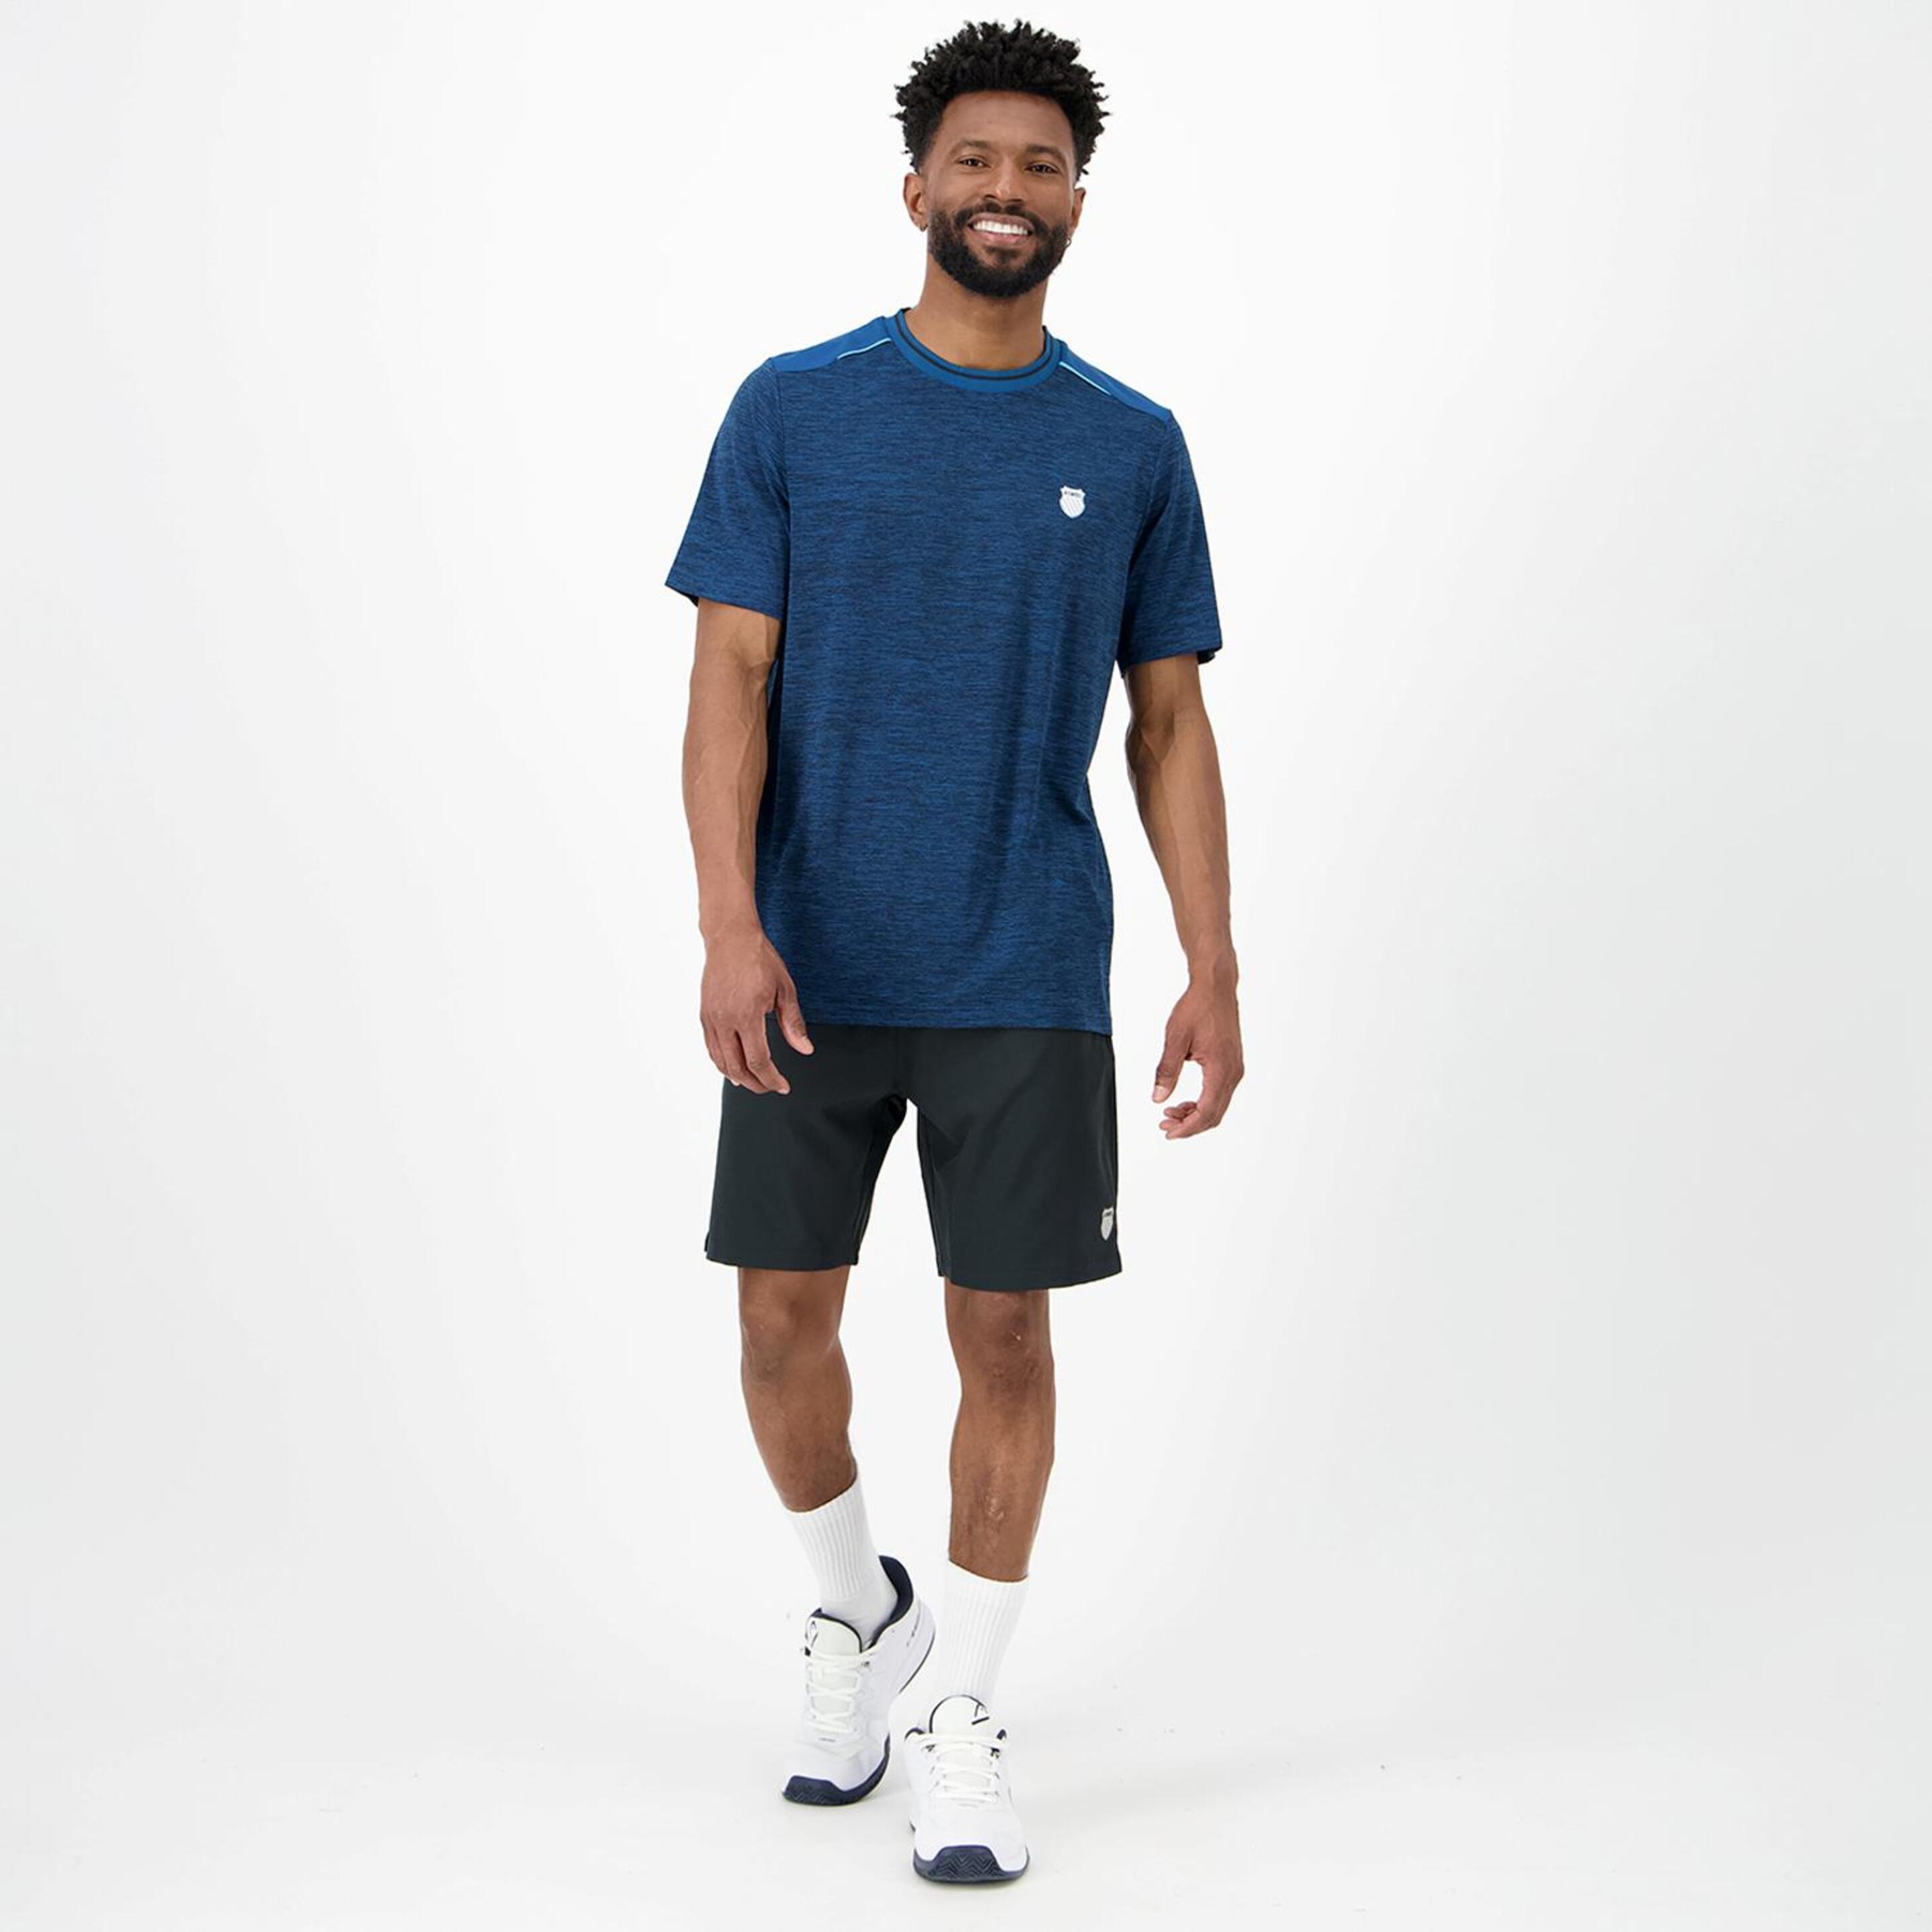 K-Swiss Hypercourt - Marino - Camiseta Tenis Hombre